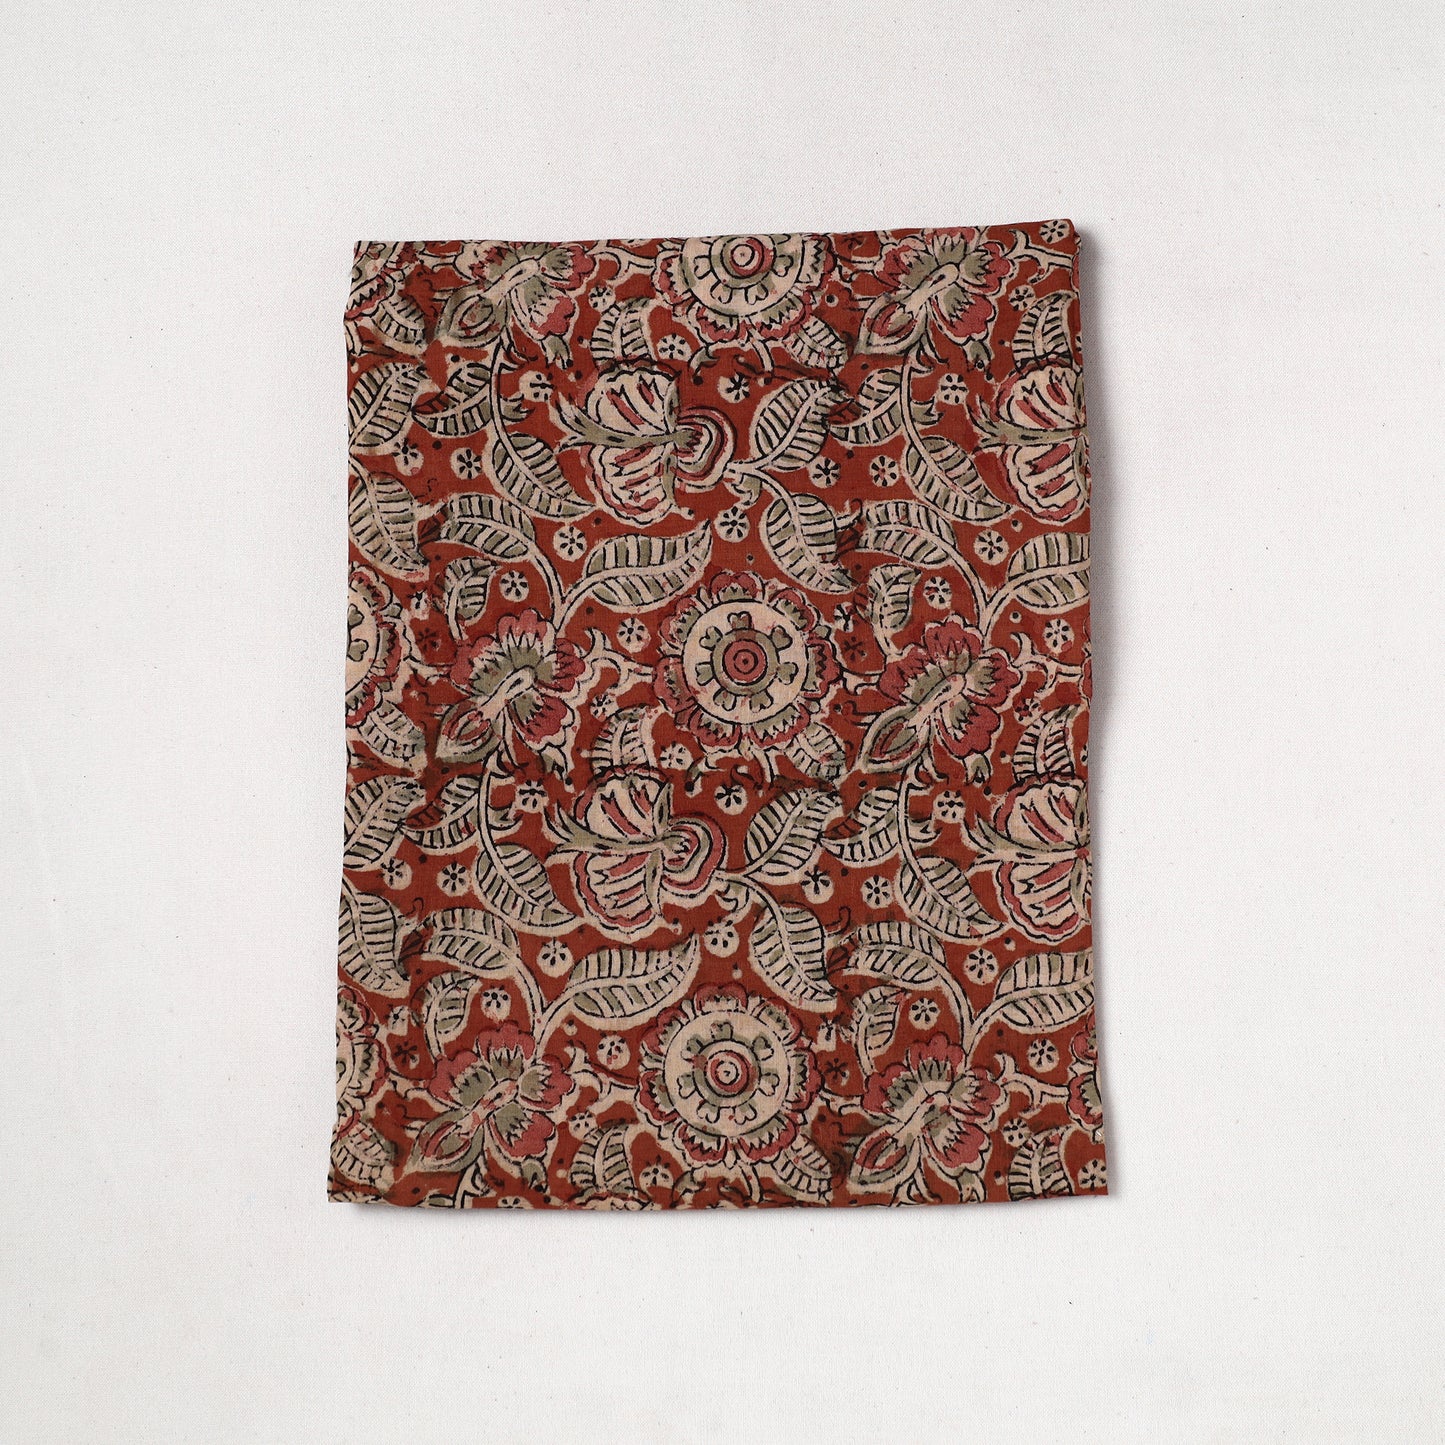 Red - Kalamkari Block Printed Cotton Precut Fabric (1 meter) 05